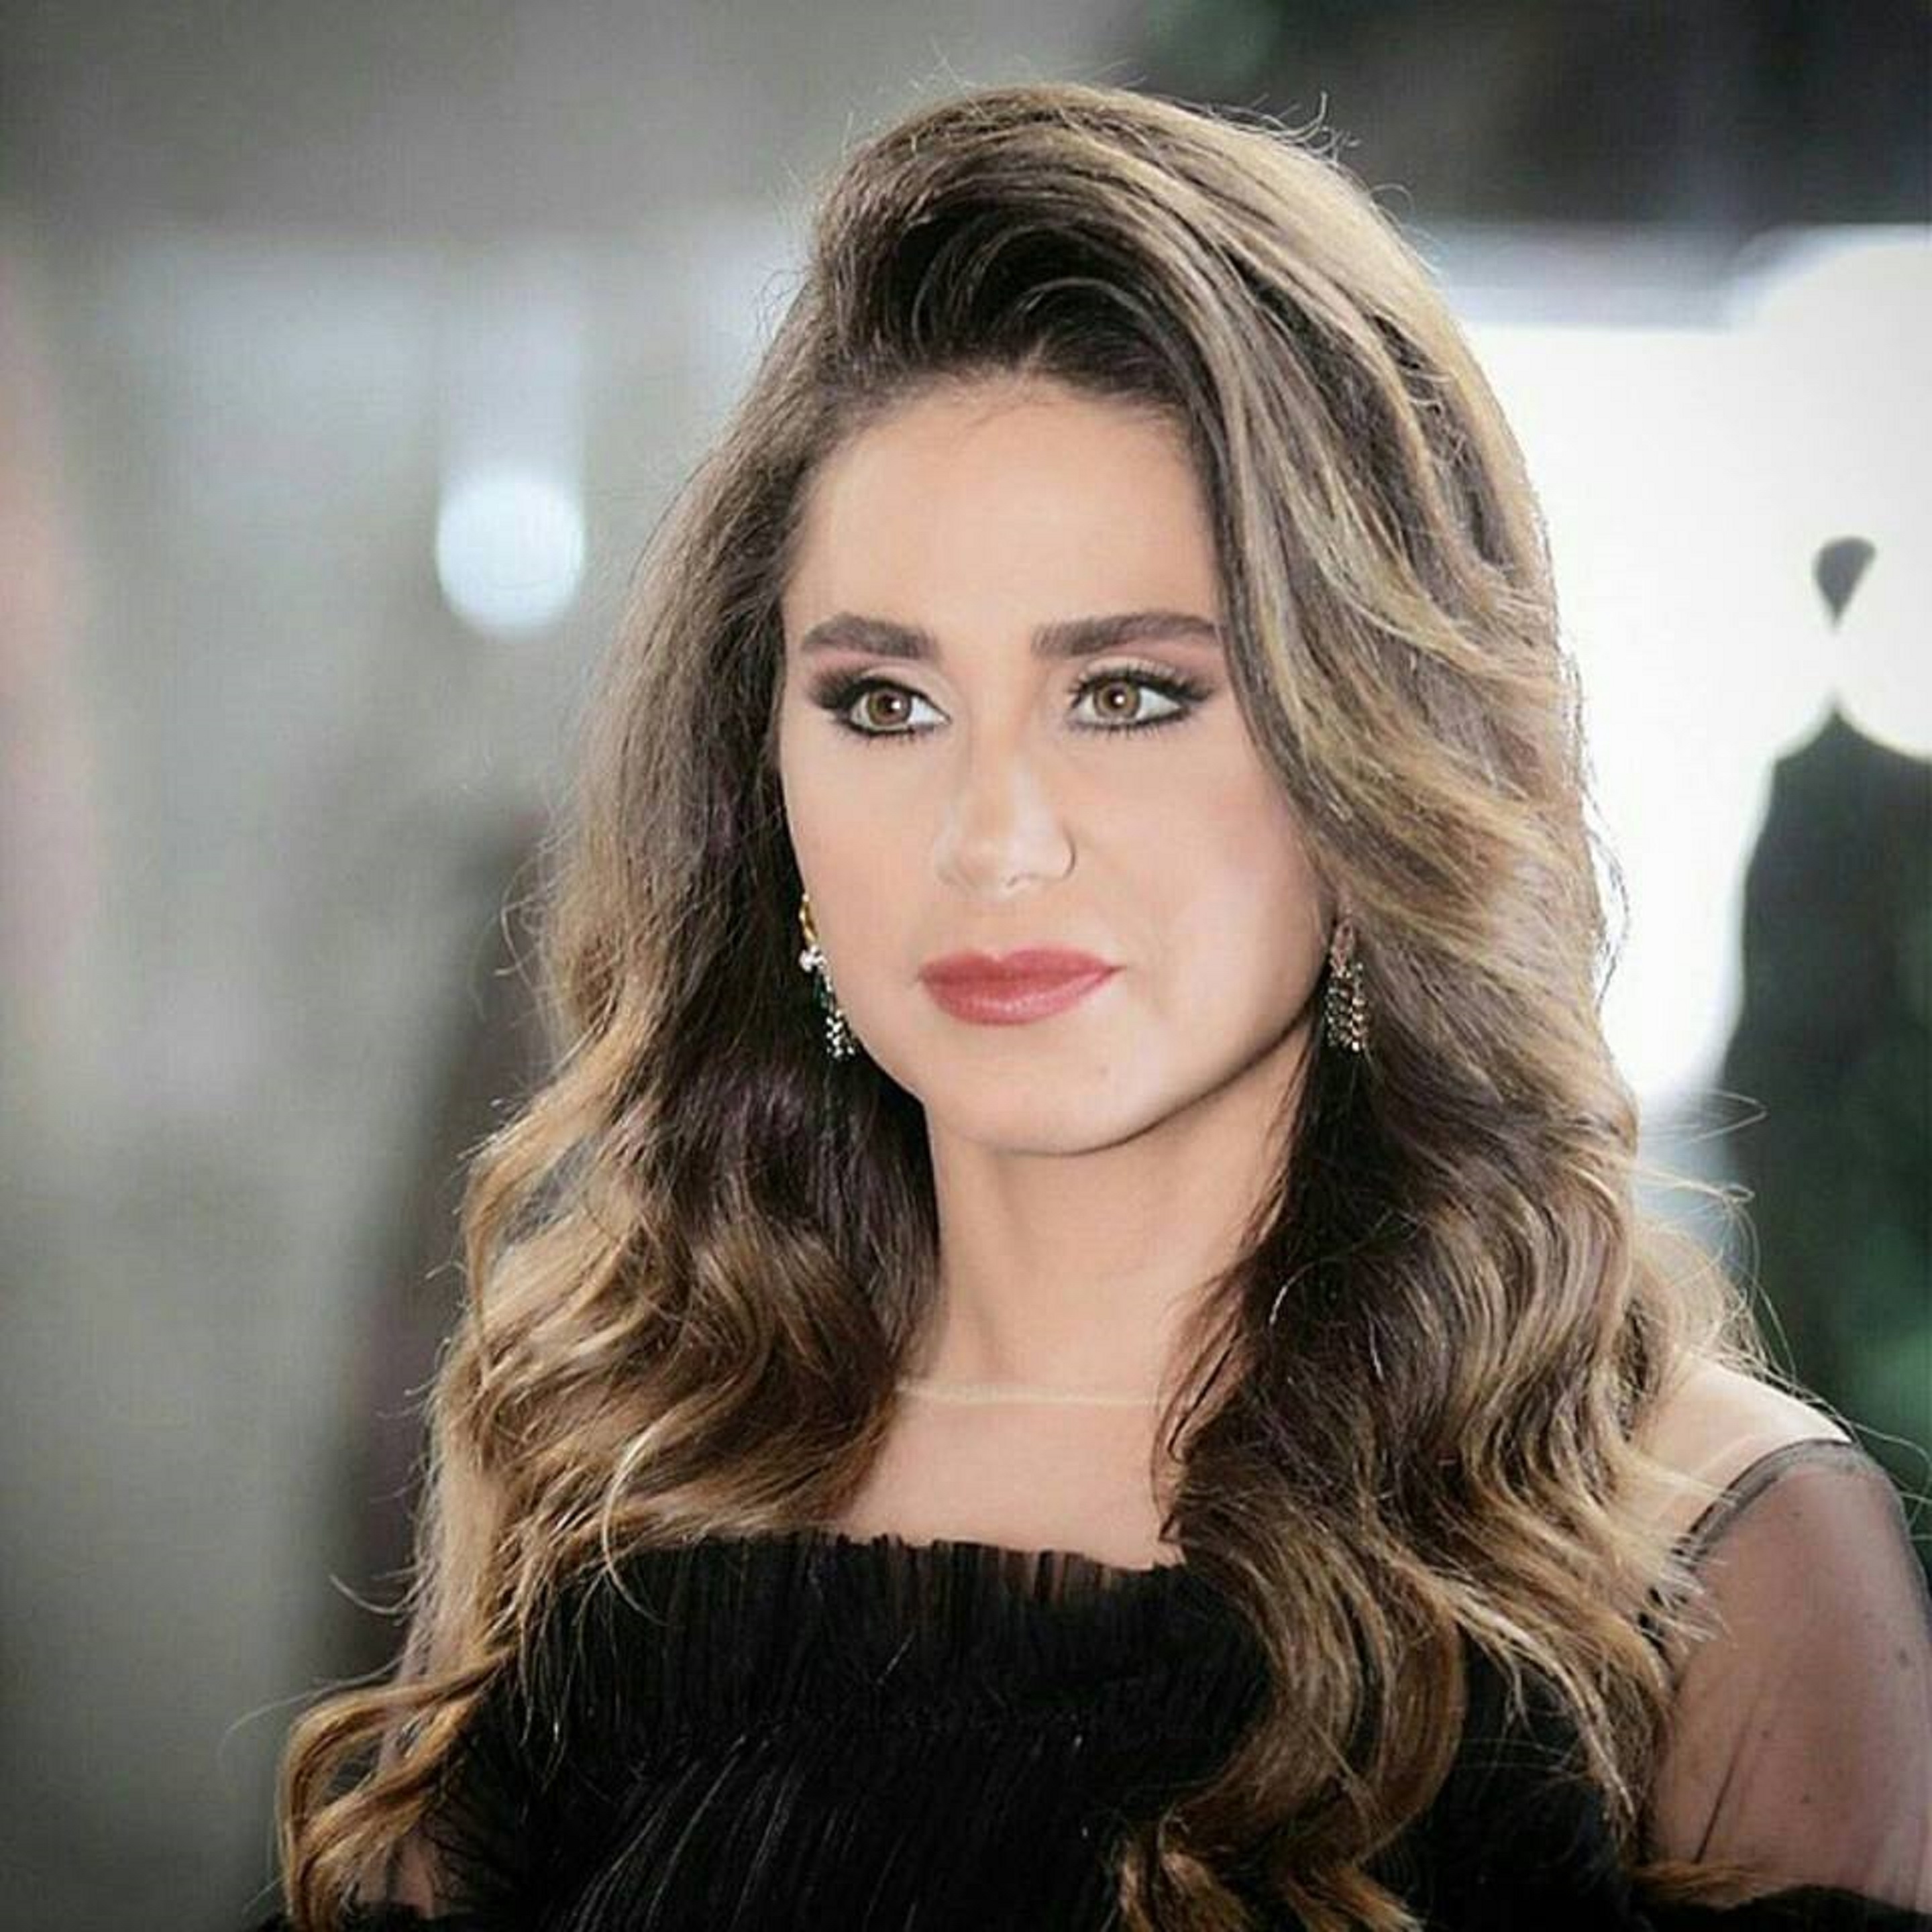 نفت الممثلة السورية ديمة قندلفت خبر مشاركتها في الجزء الخامس من مسلسل “طوق البنات” Chada Tv